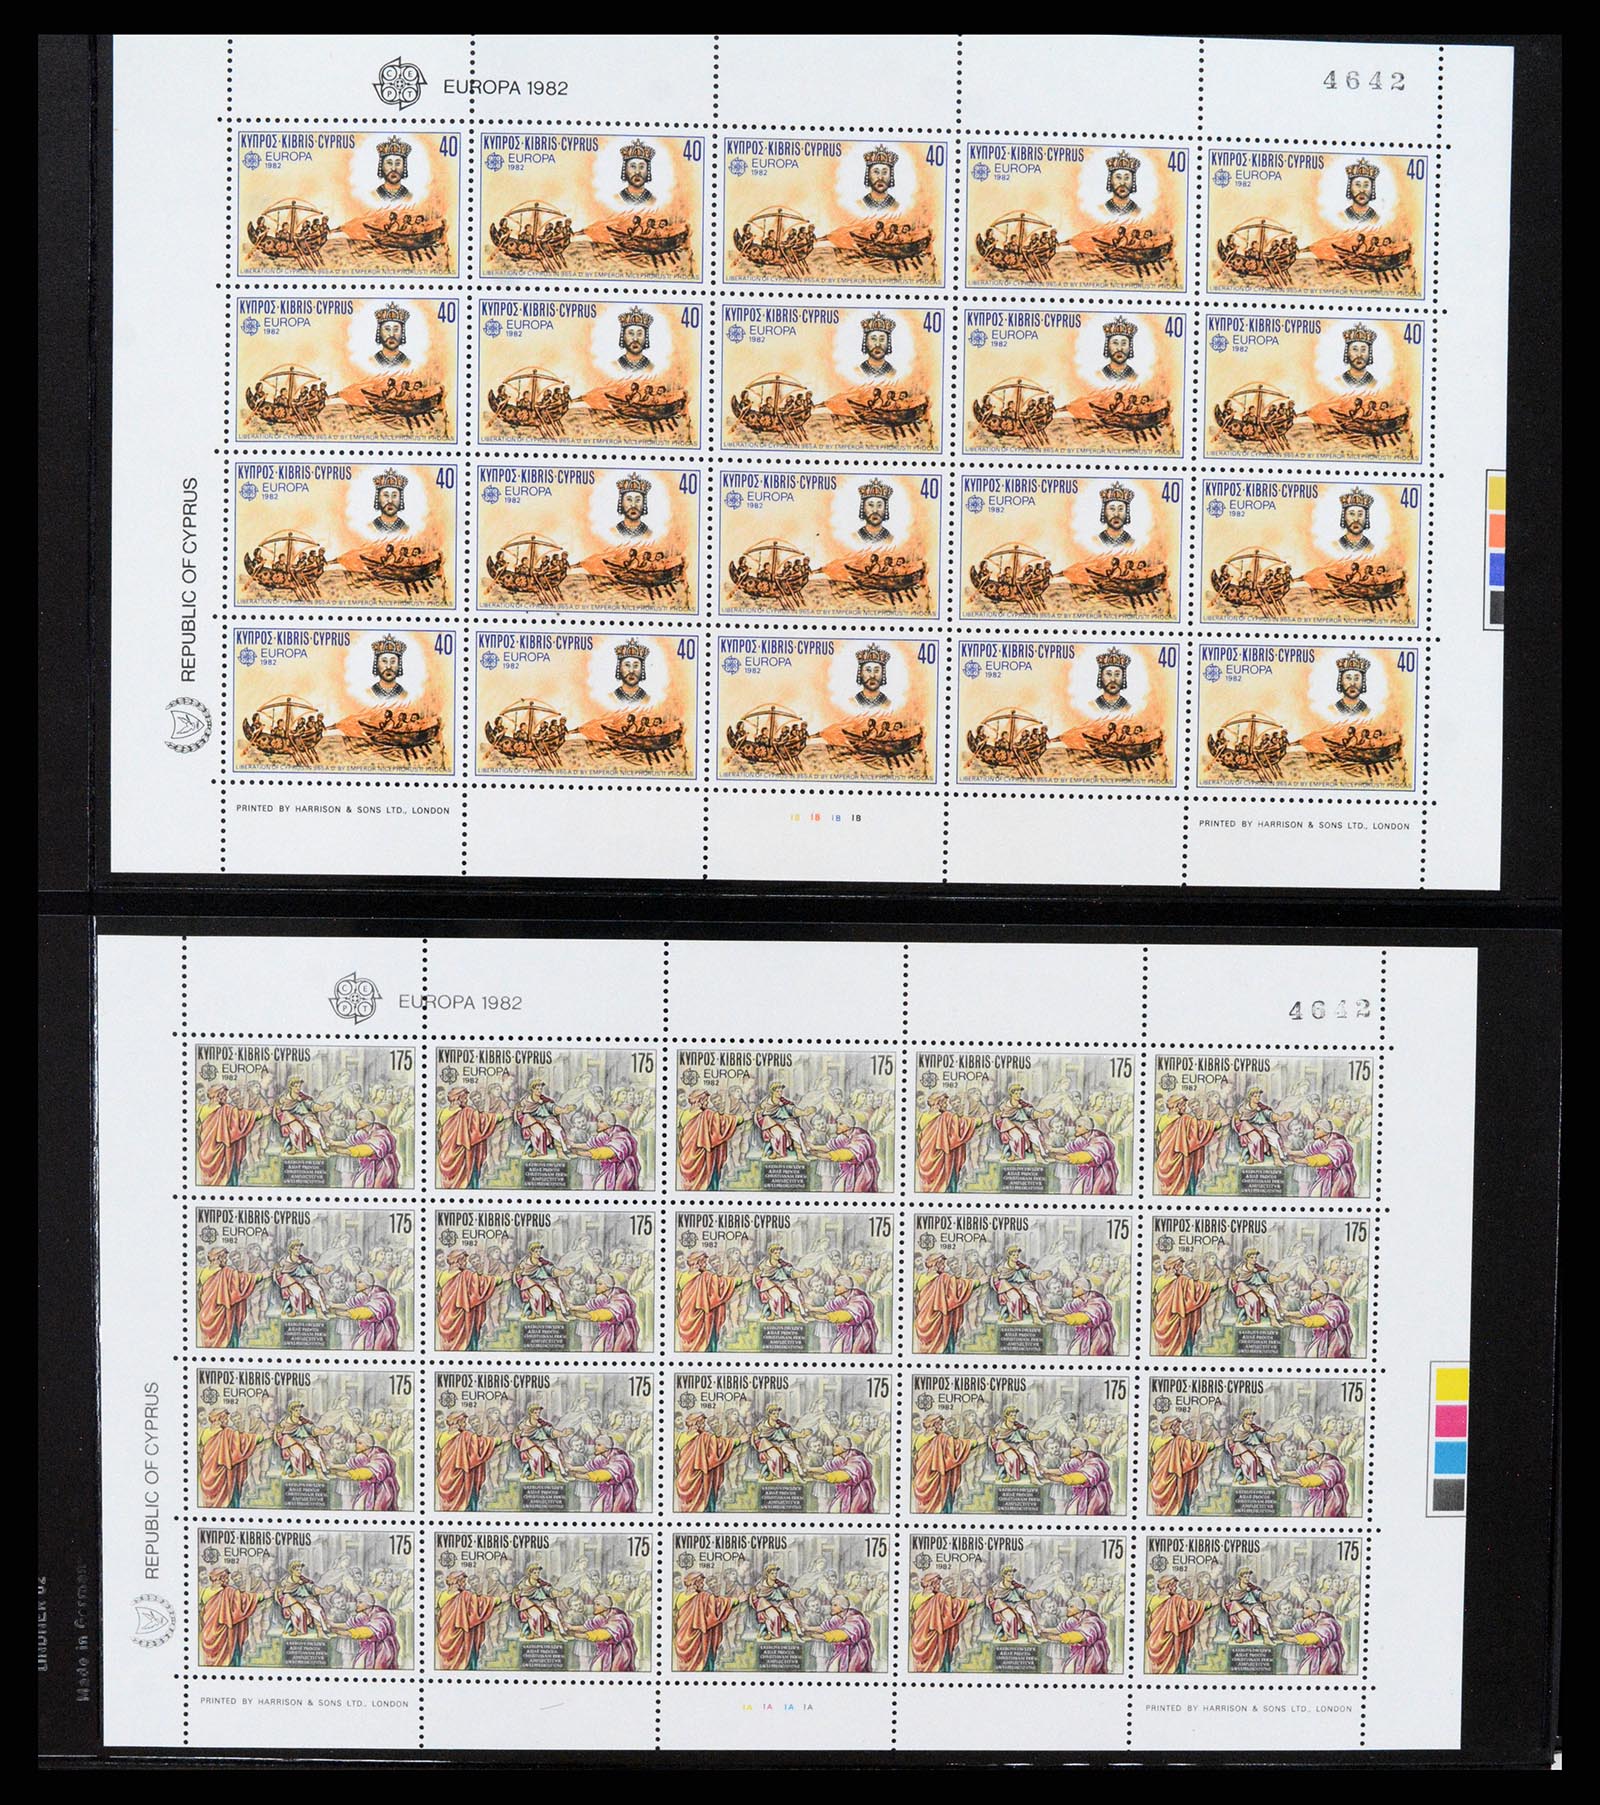 37345 024 - Stamp collection 37345 European countries souvenir sheets.